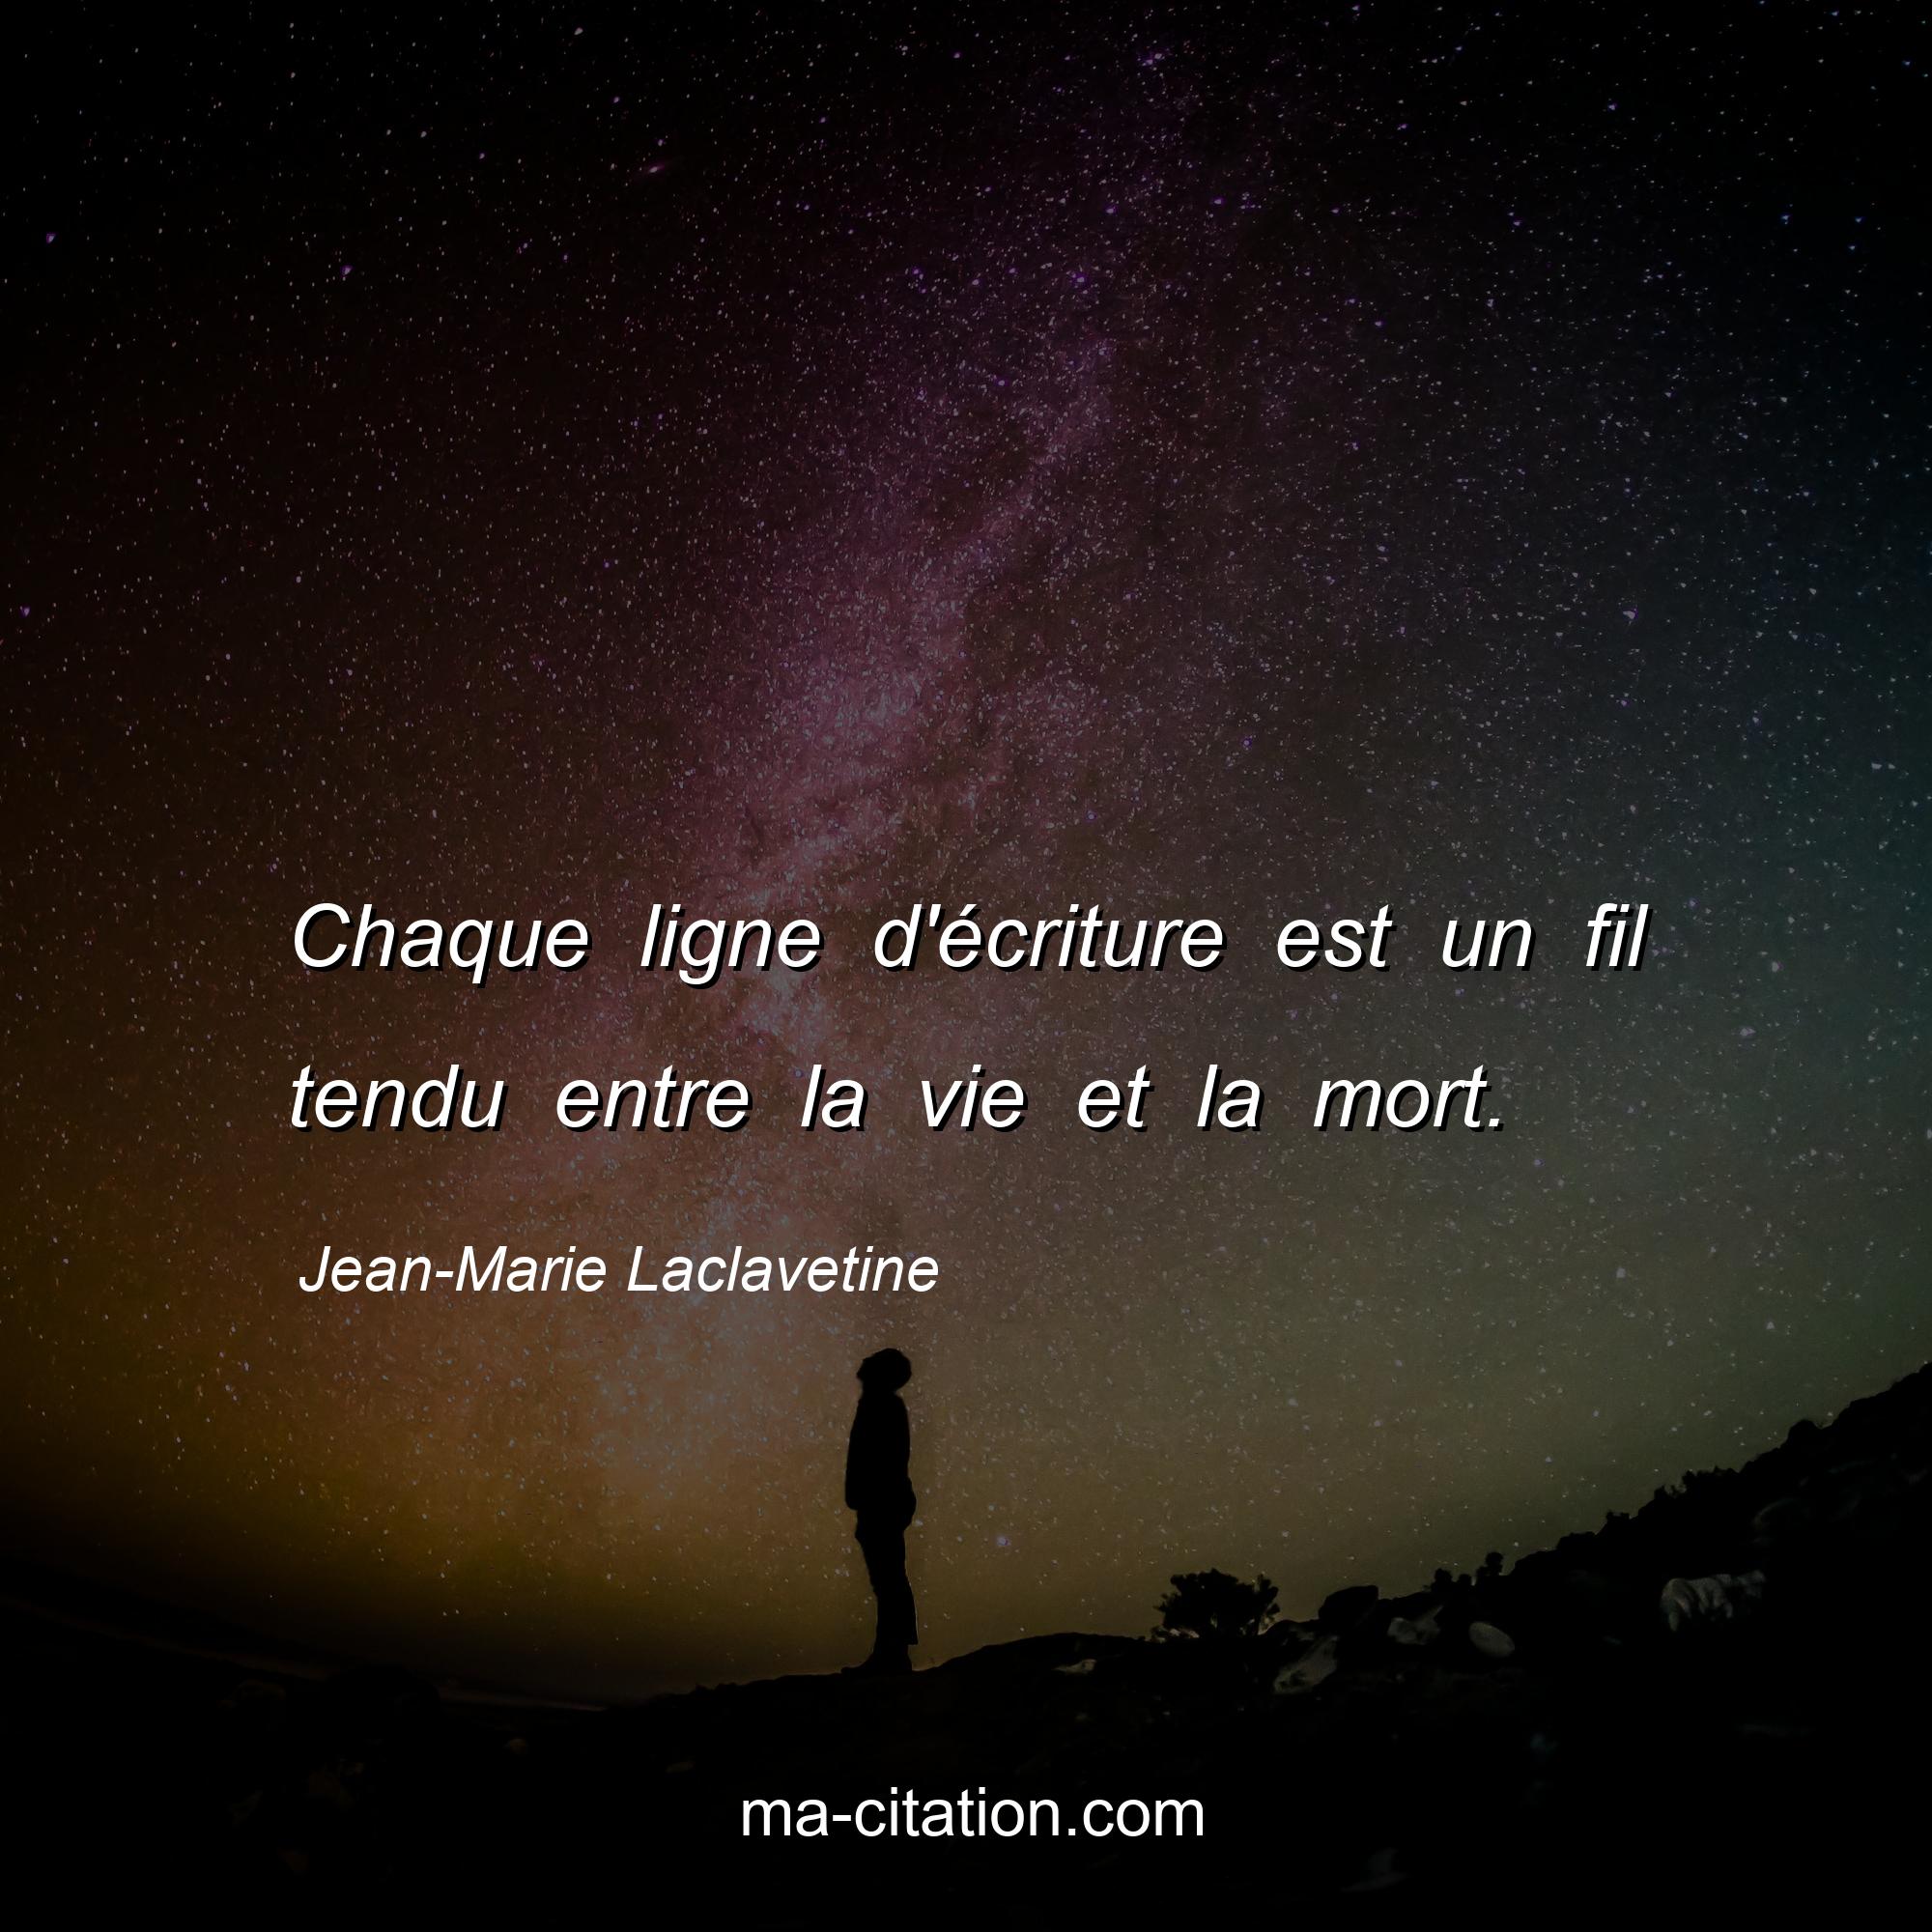 Jean-Marie Laclavetine : Chaque ligne d'écriture est un fil tendu entre la vie et la mort.